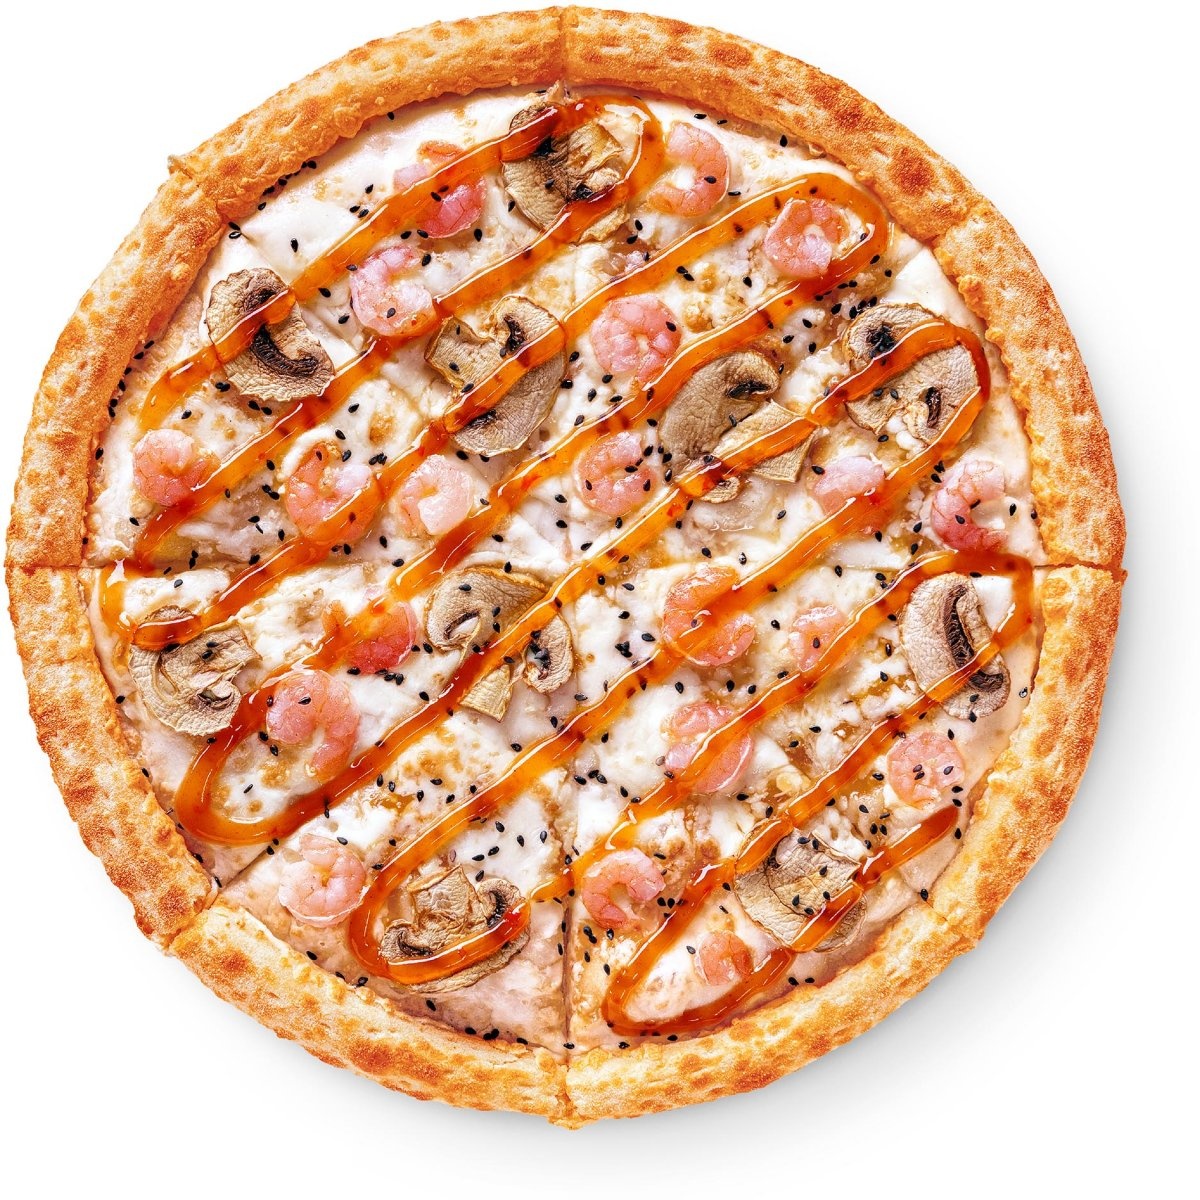 состав пепперони в додо пицца фото 117